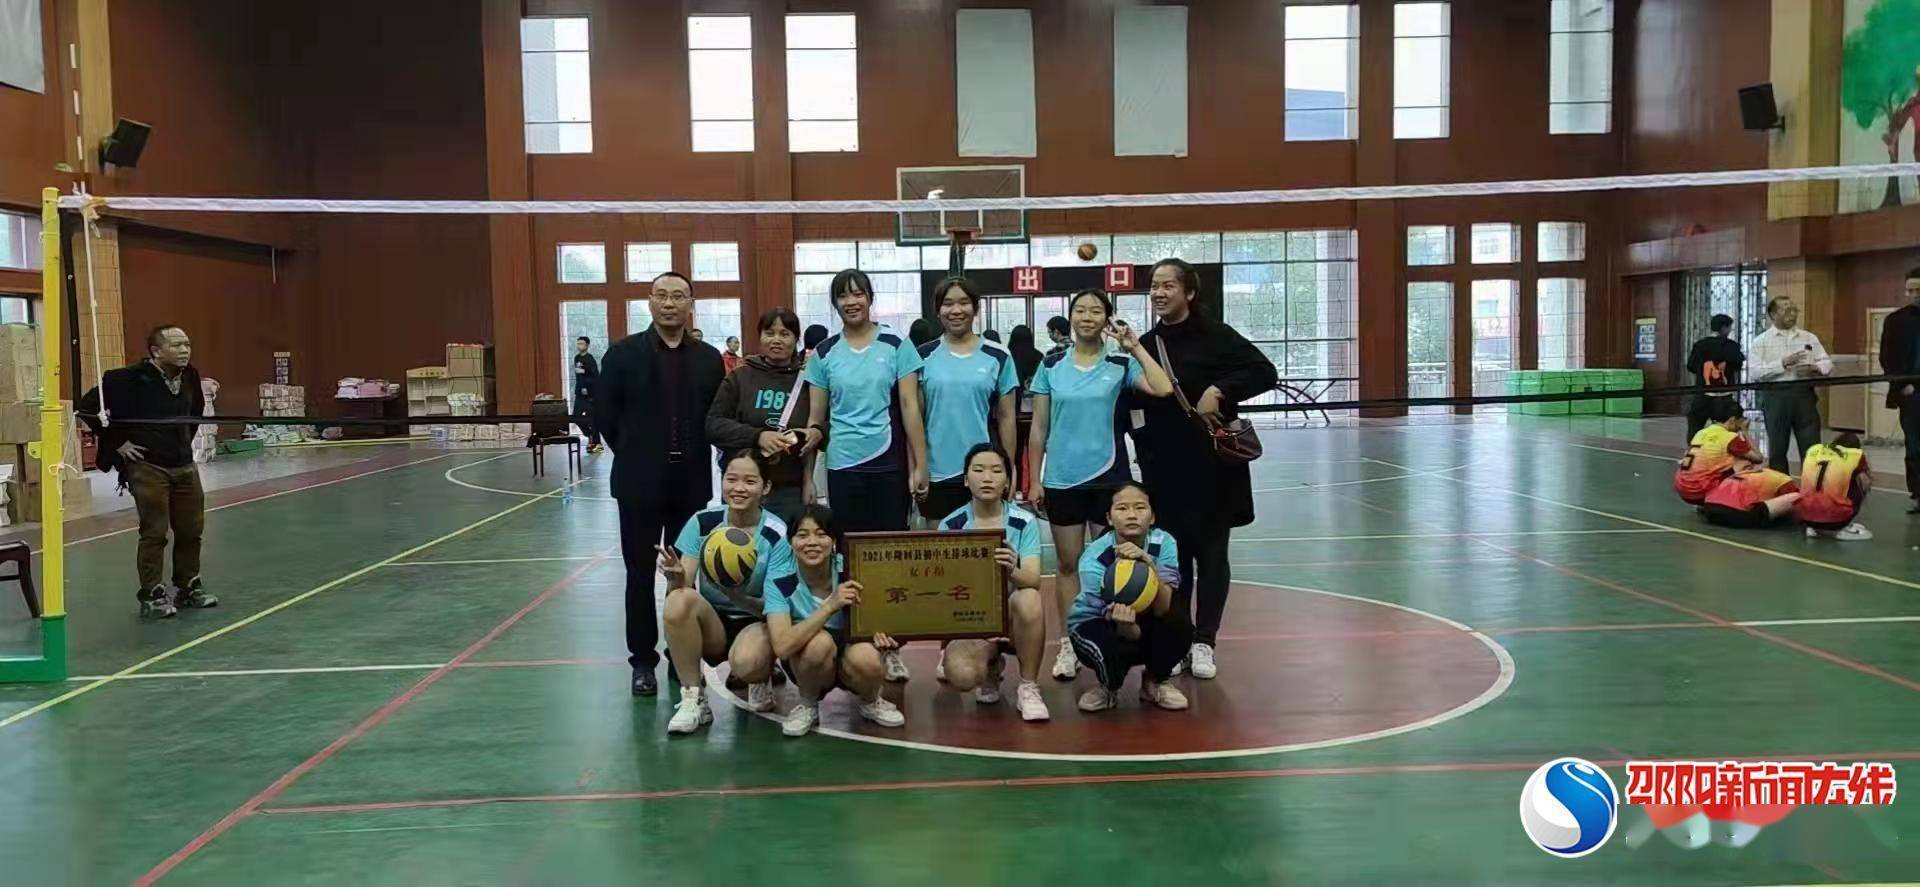 女子|隆回县花门街道城西学校女子排球队喜获佳绩